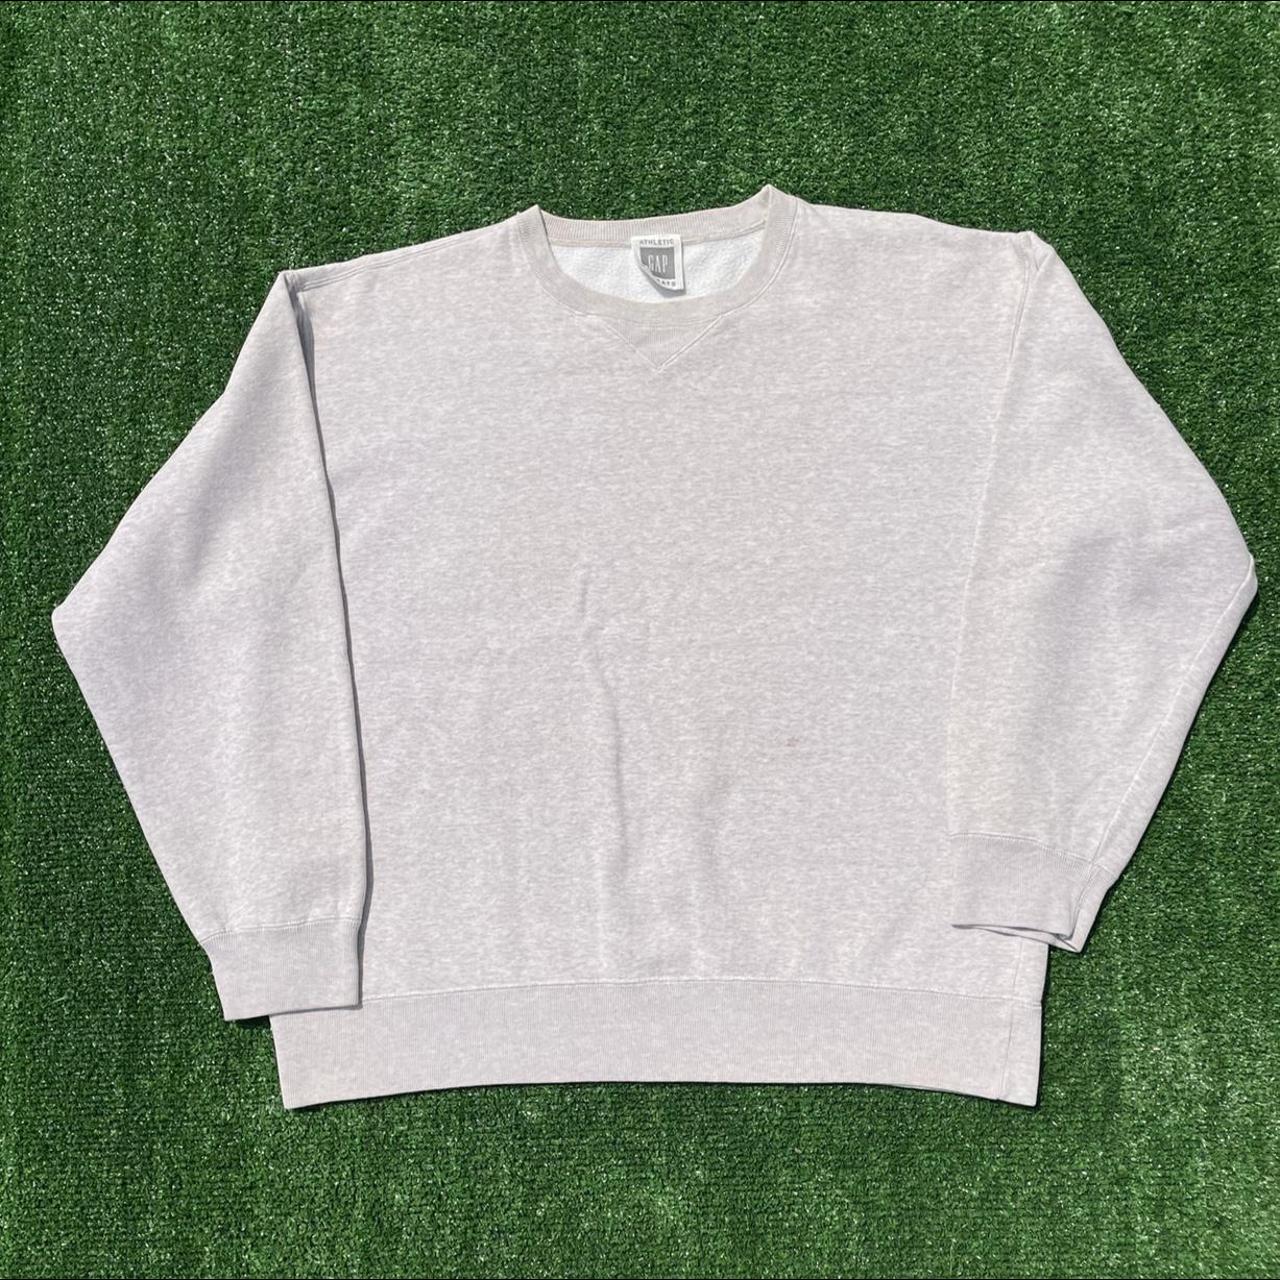 Men’s vintage cream Gap premium sweatshirt in great... - Depop